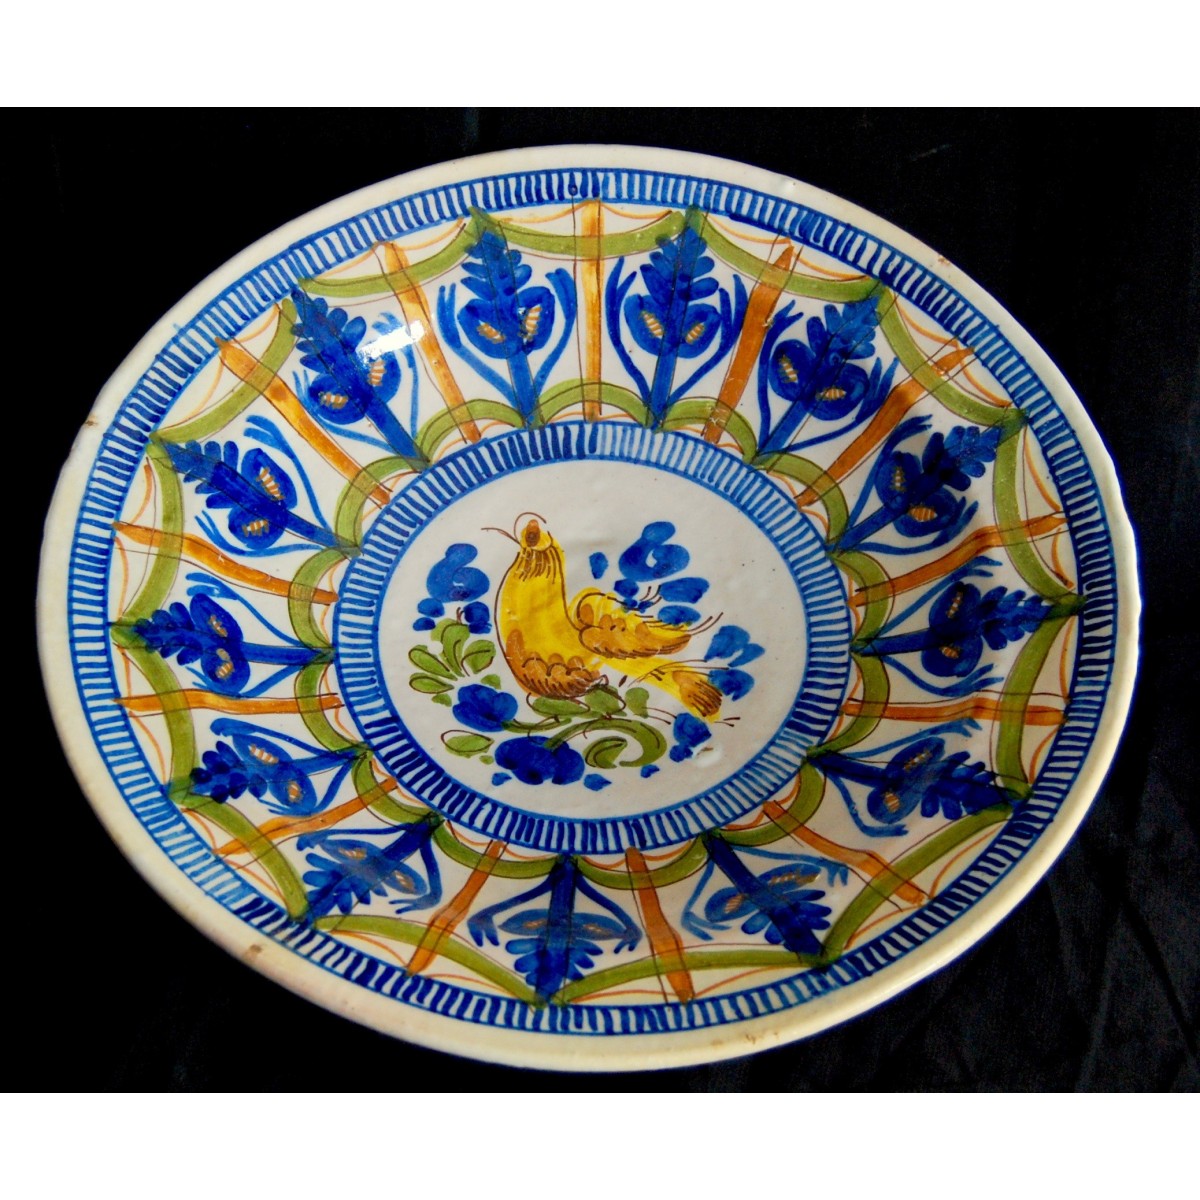 Plato de cerámica del siglo XIX de Manises (Valencia), “ave”